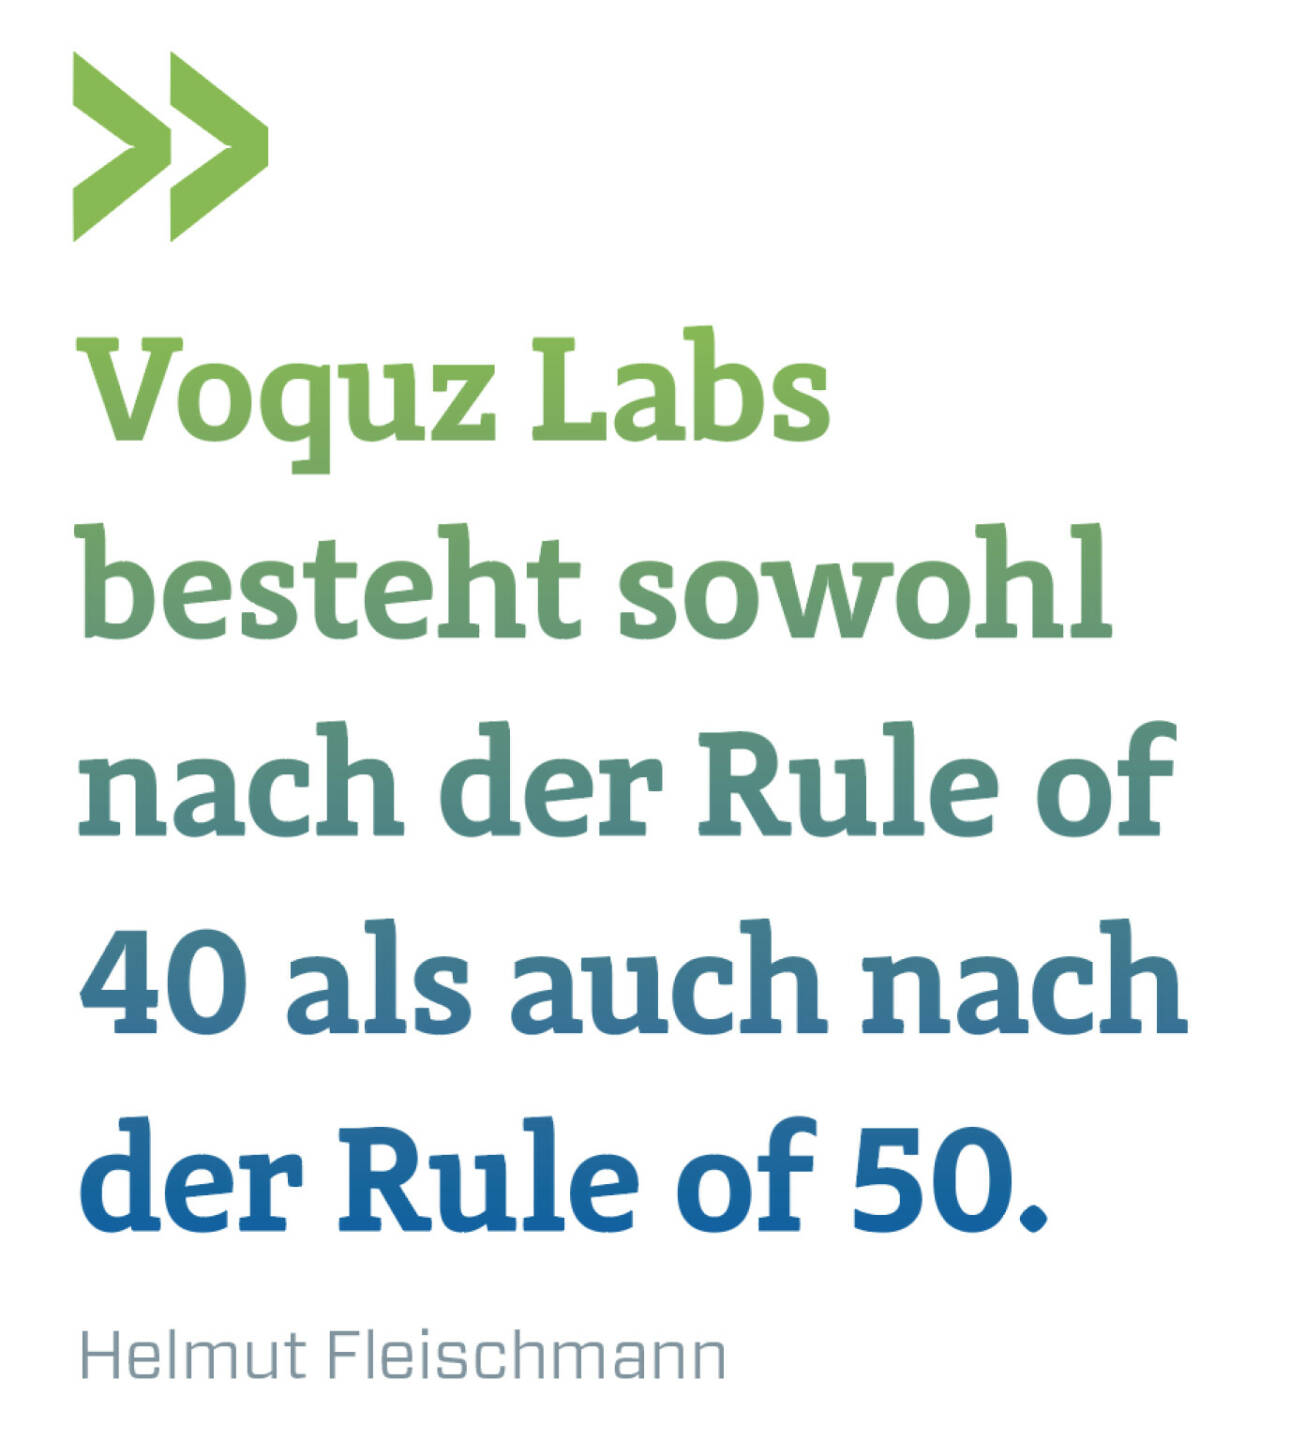 Voquz Labs besteht sowohl nach der Rule of 40 als auch nach der Rule of 50.
Helmut Fleischmann